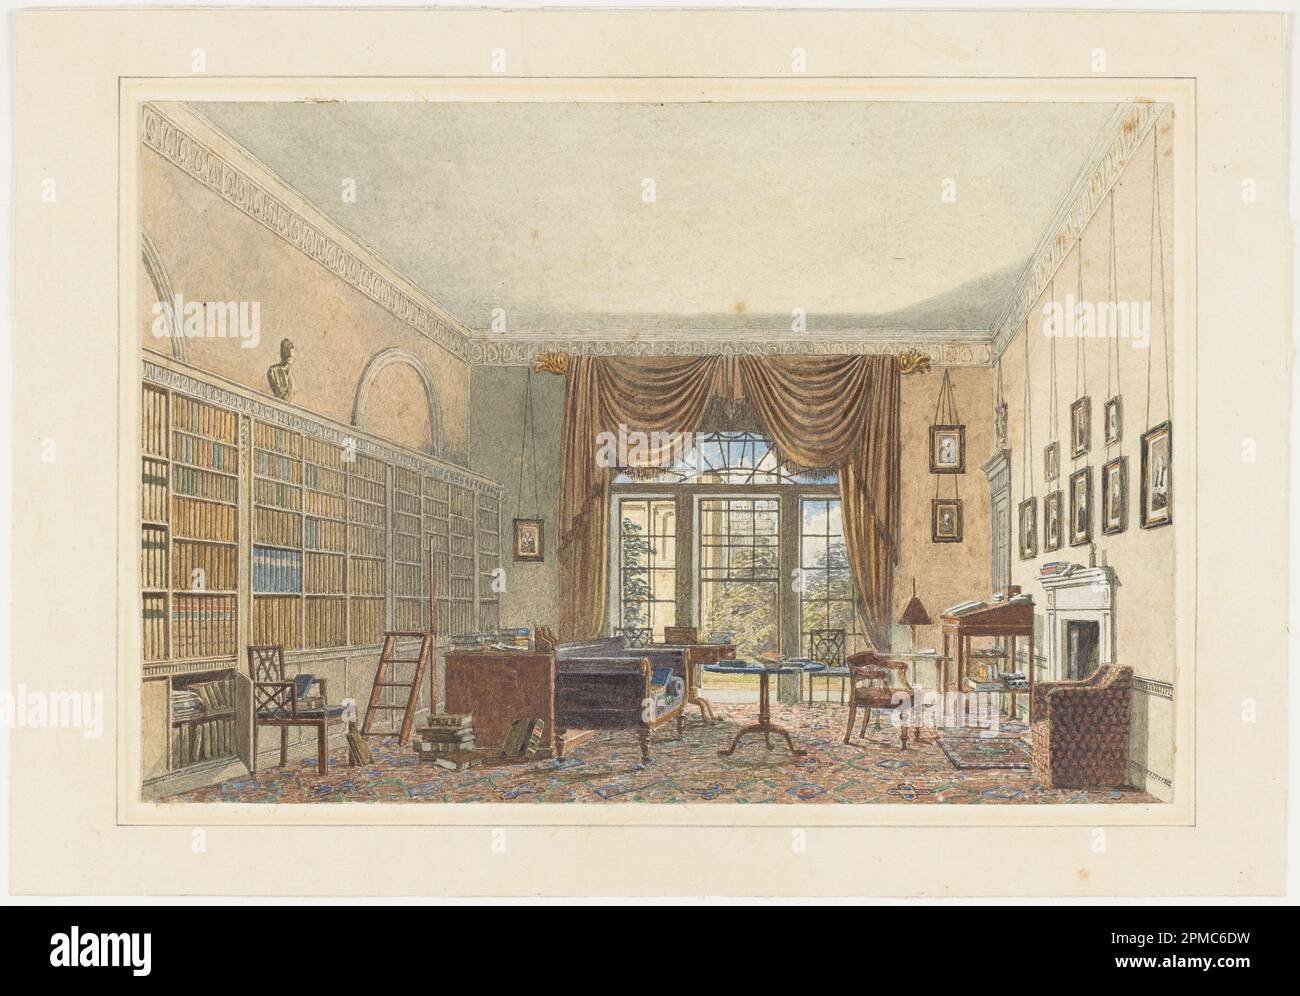 Aquarelle, intérieur d'une bibliothèque; inconnue (anglais); pinceau et aquarelle, graphite sur papier; cadre H x L x P : 39,7 x 50,2 x 2,5 cm (15 5/8 x 19 3/4 x 1 po) Feuille : 21,3 x 31,6 cm (8 3/8 x 12 7/16 po); dégel; 2007-27-28 Banque D'Images